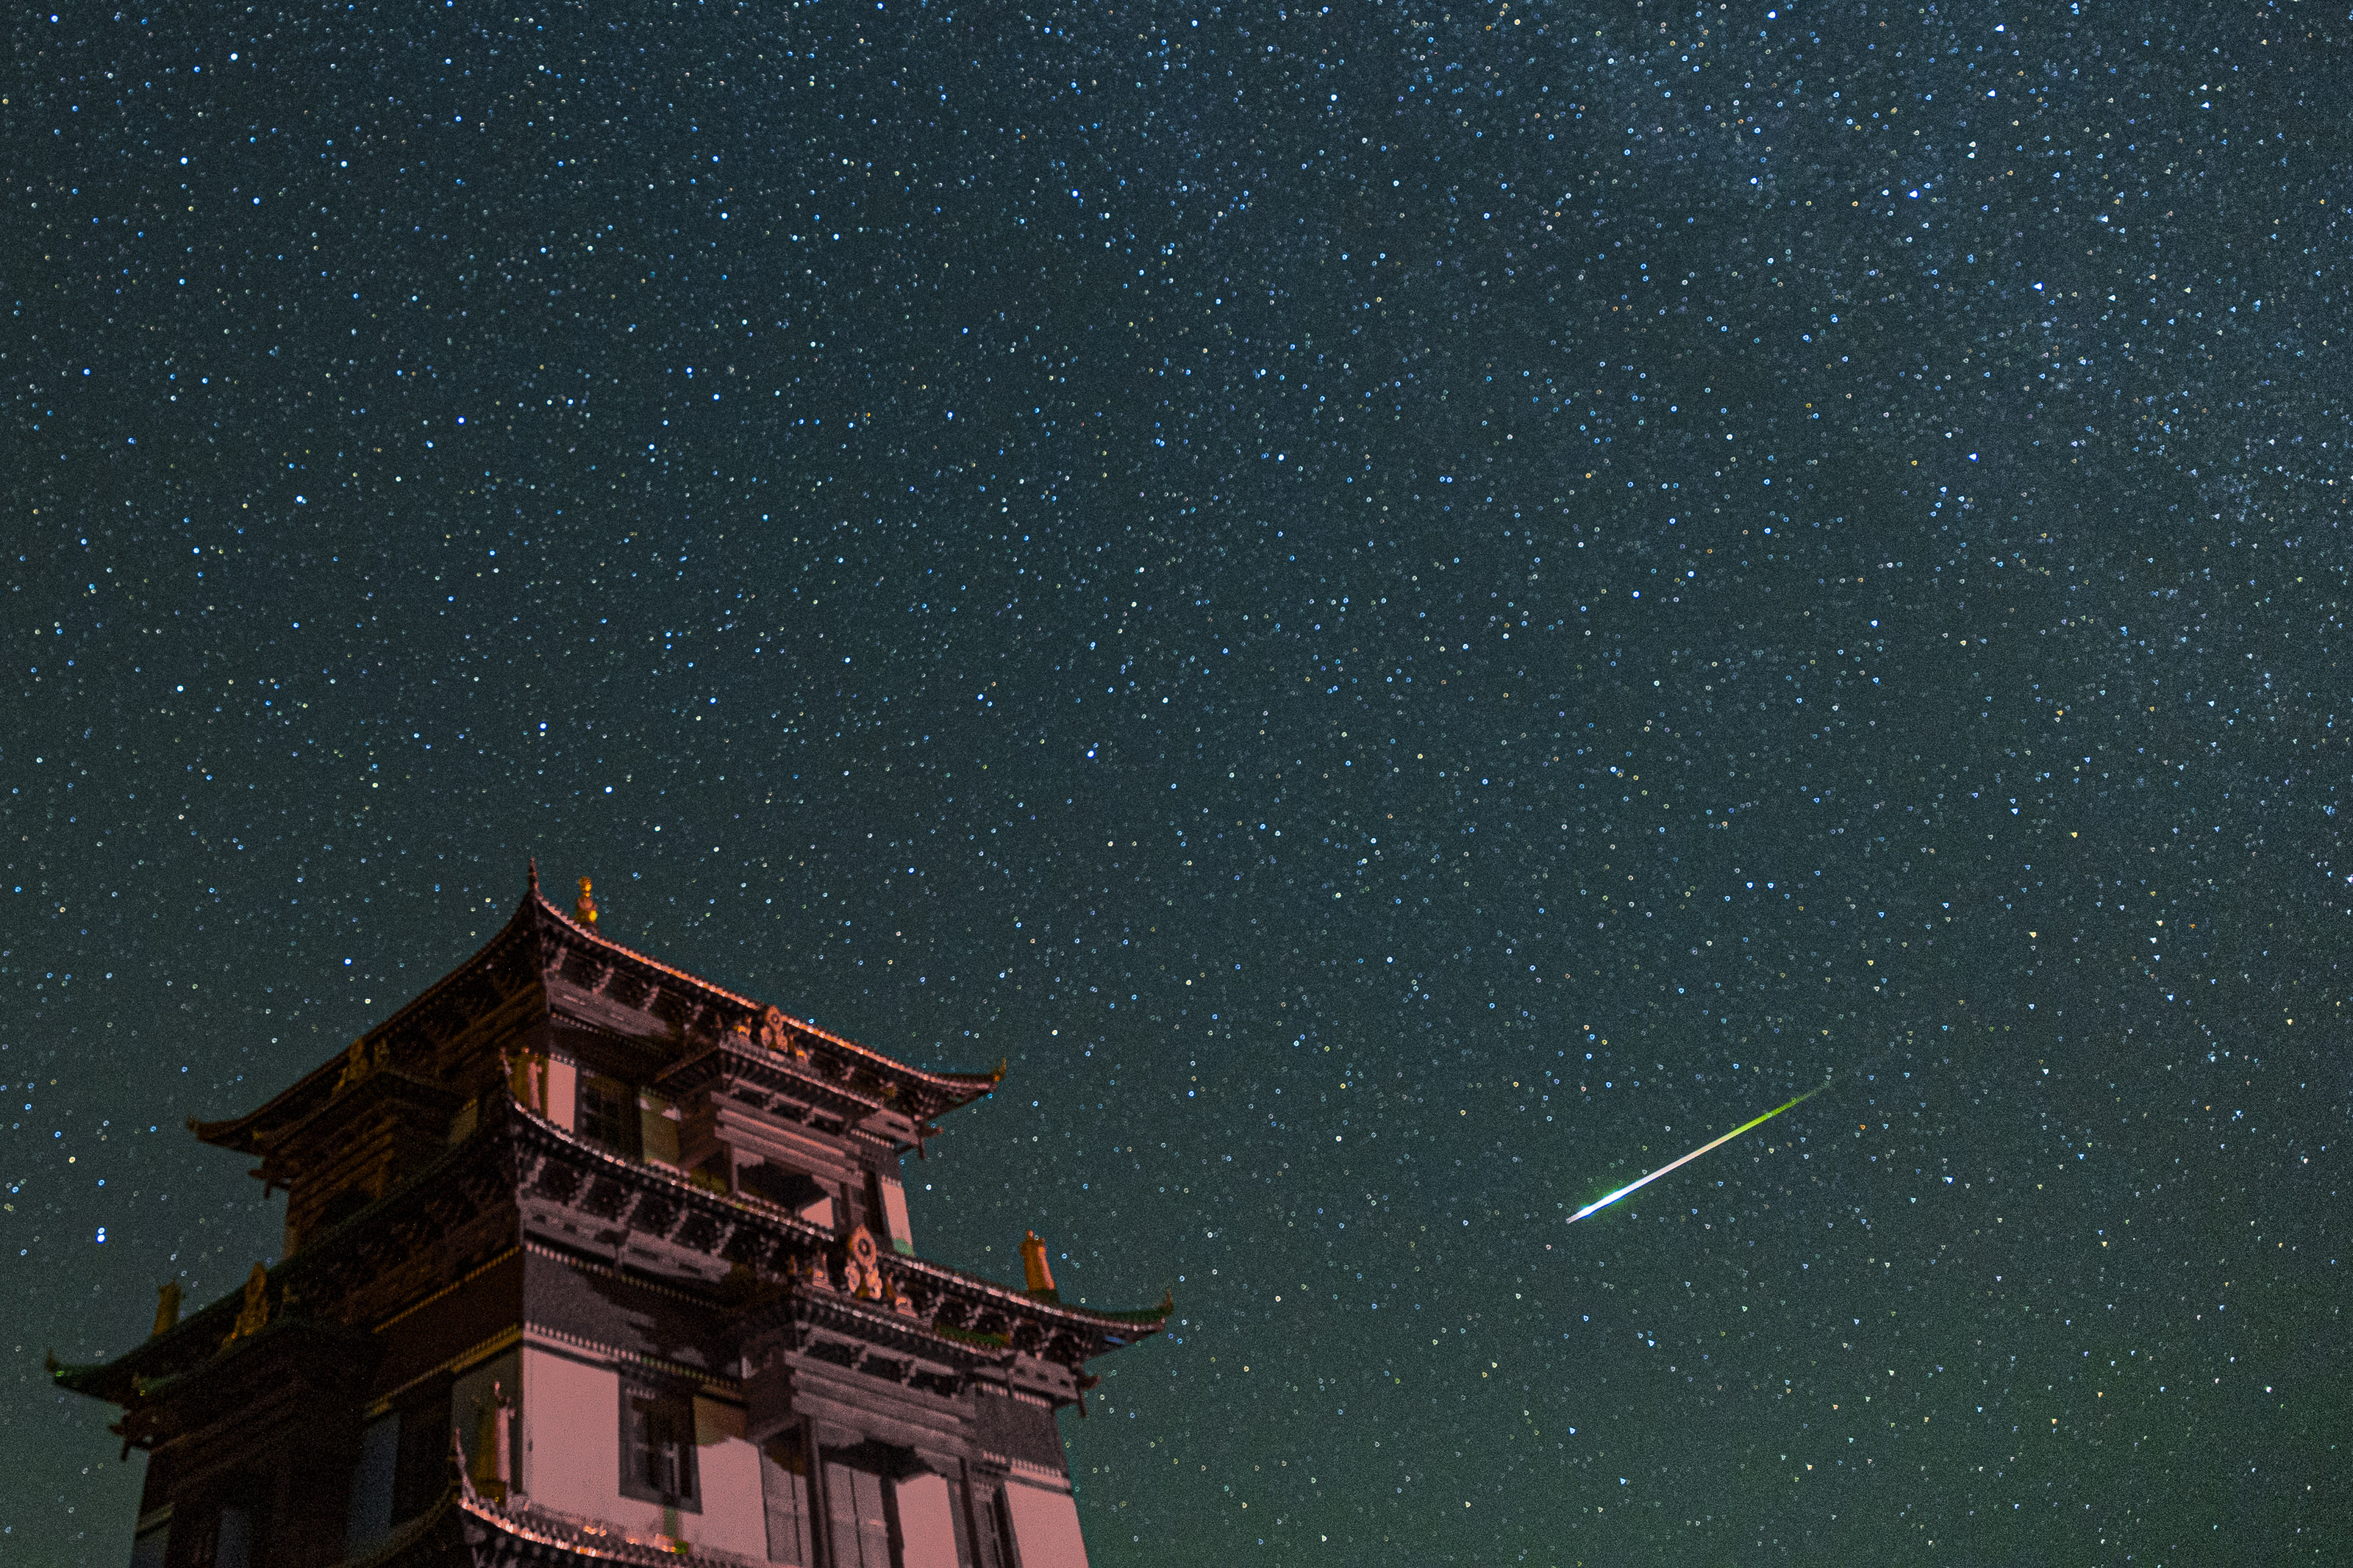 Solda büyük bir bina ve yıldızlı gökyüzünde parıldayan beyaz bir meteor.